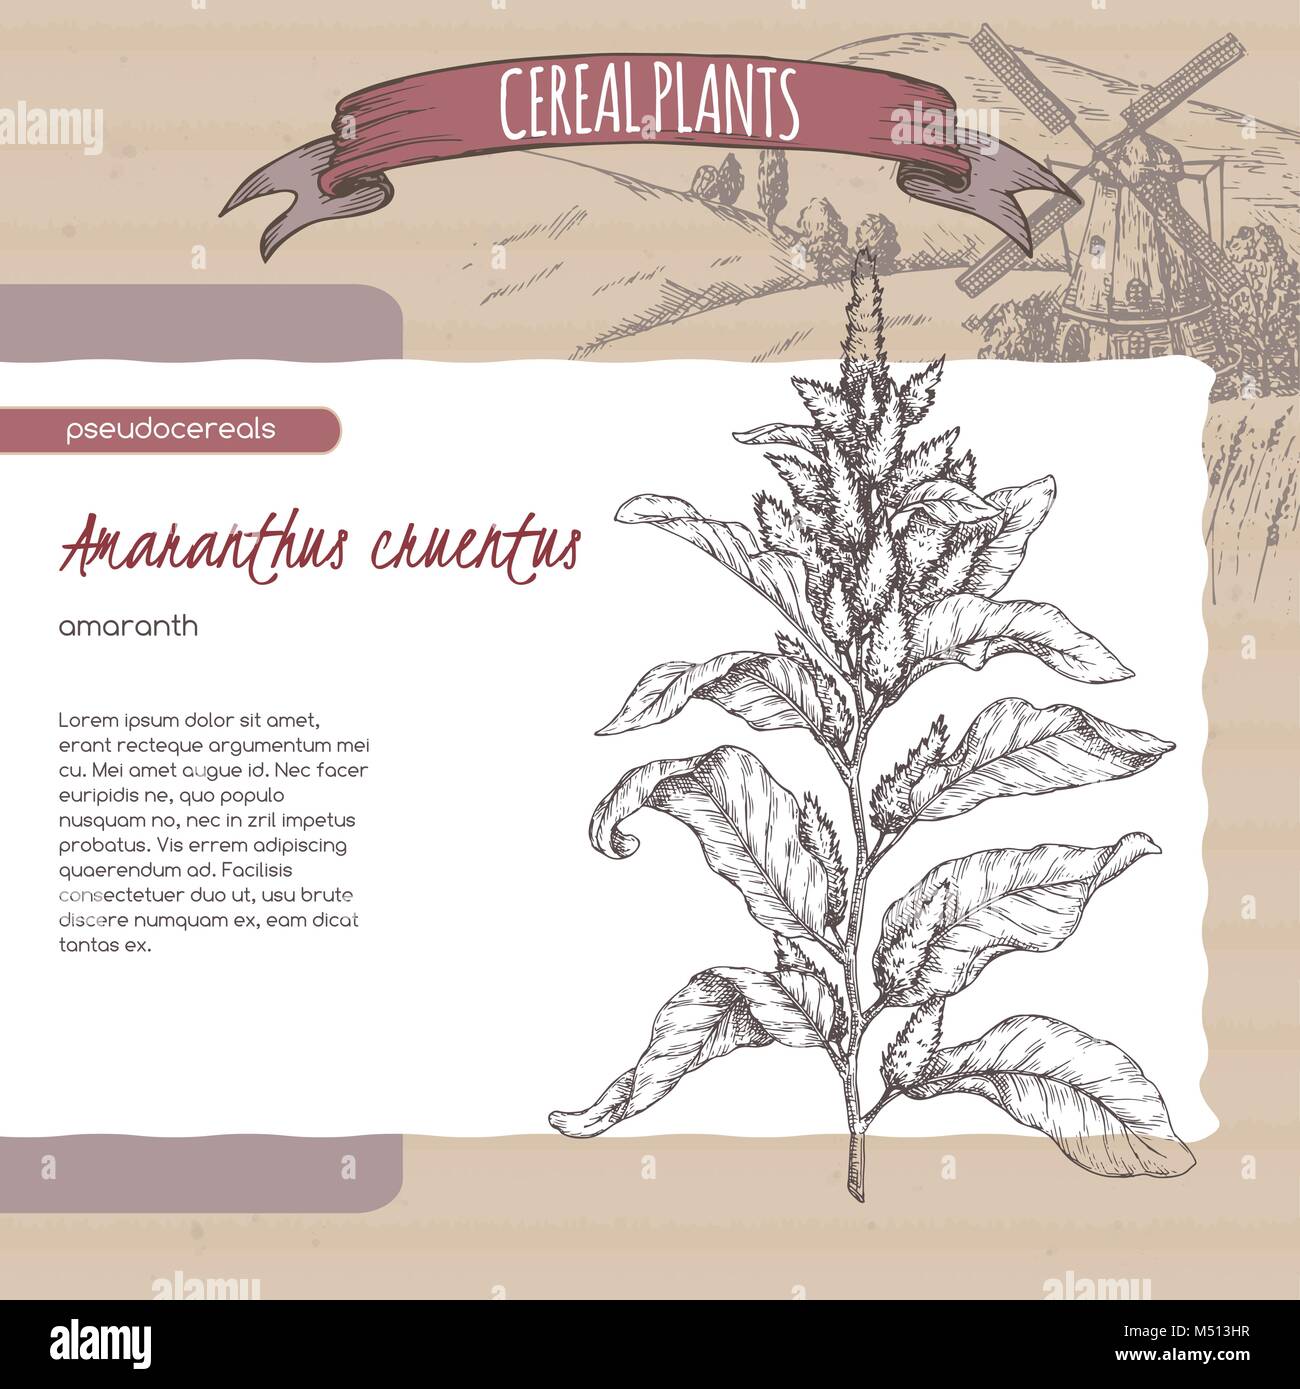 Amarante Amaranthus cruentus aka croquis. Collection de plantes céréalières. Illustration de Vecteur